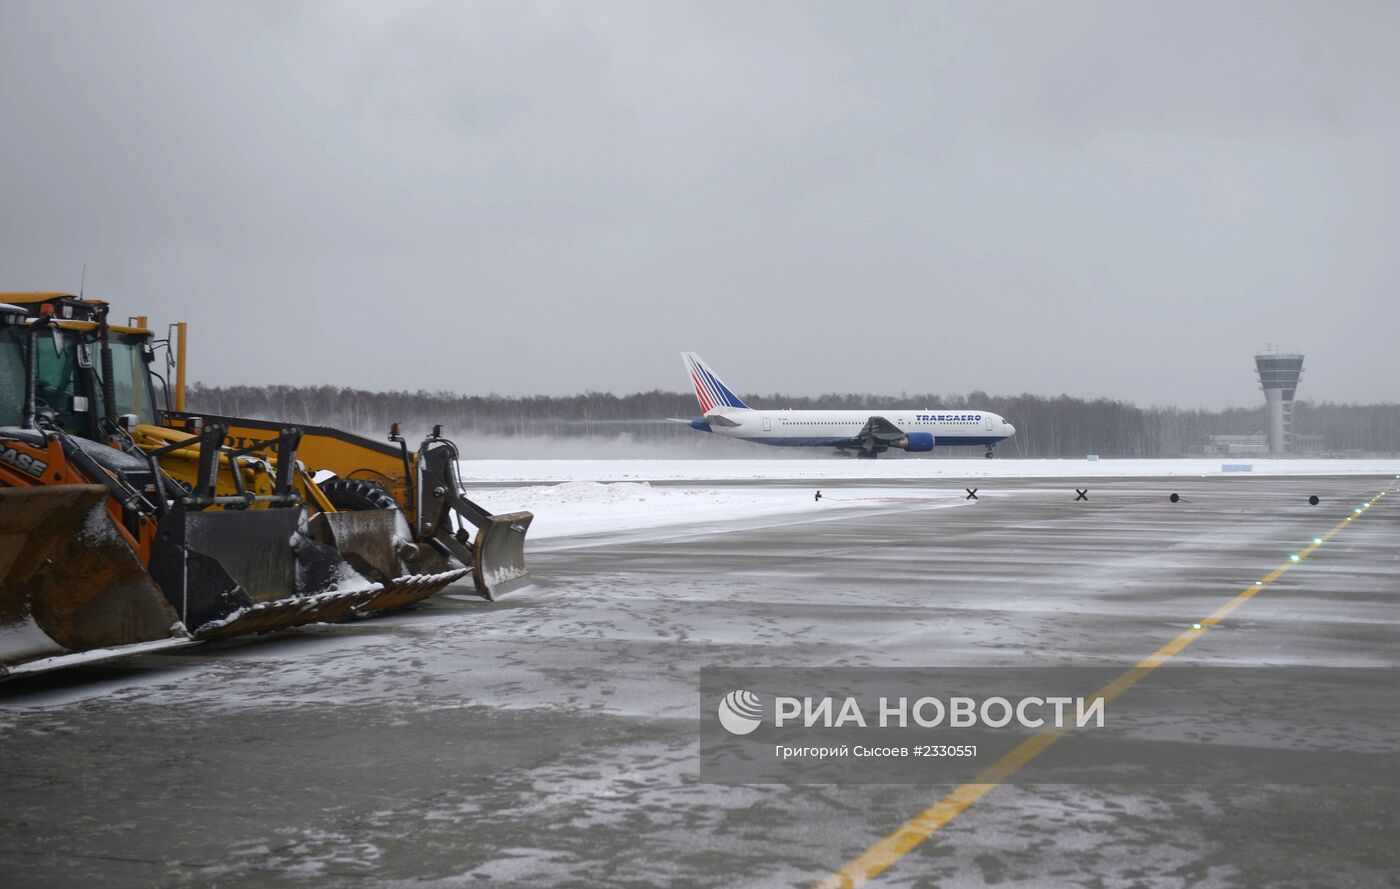 Открытие взлетно-посадочной полосы а аэропорту "Внуково" после реконструкции